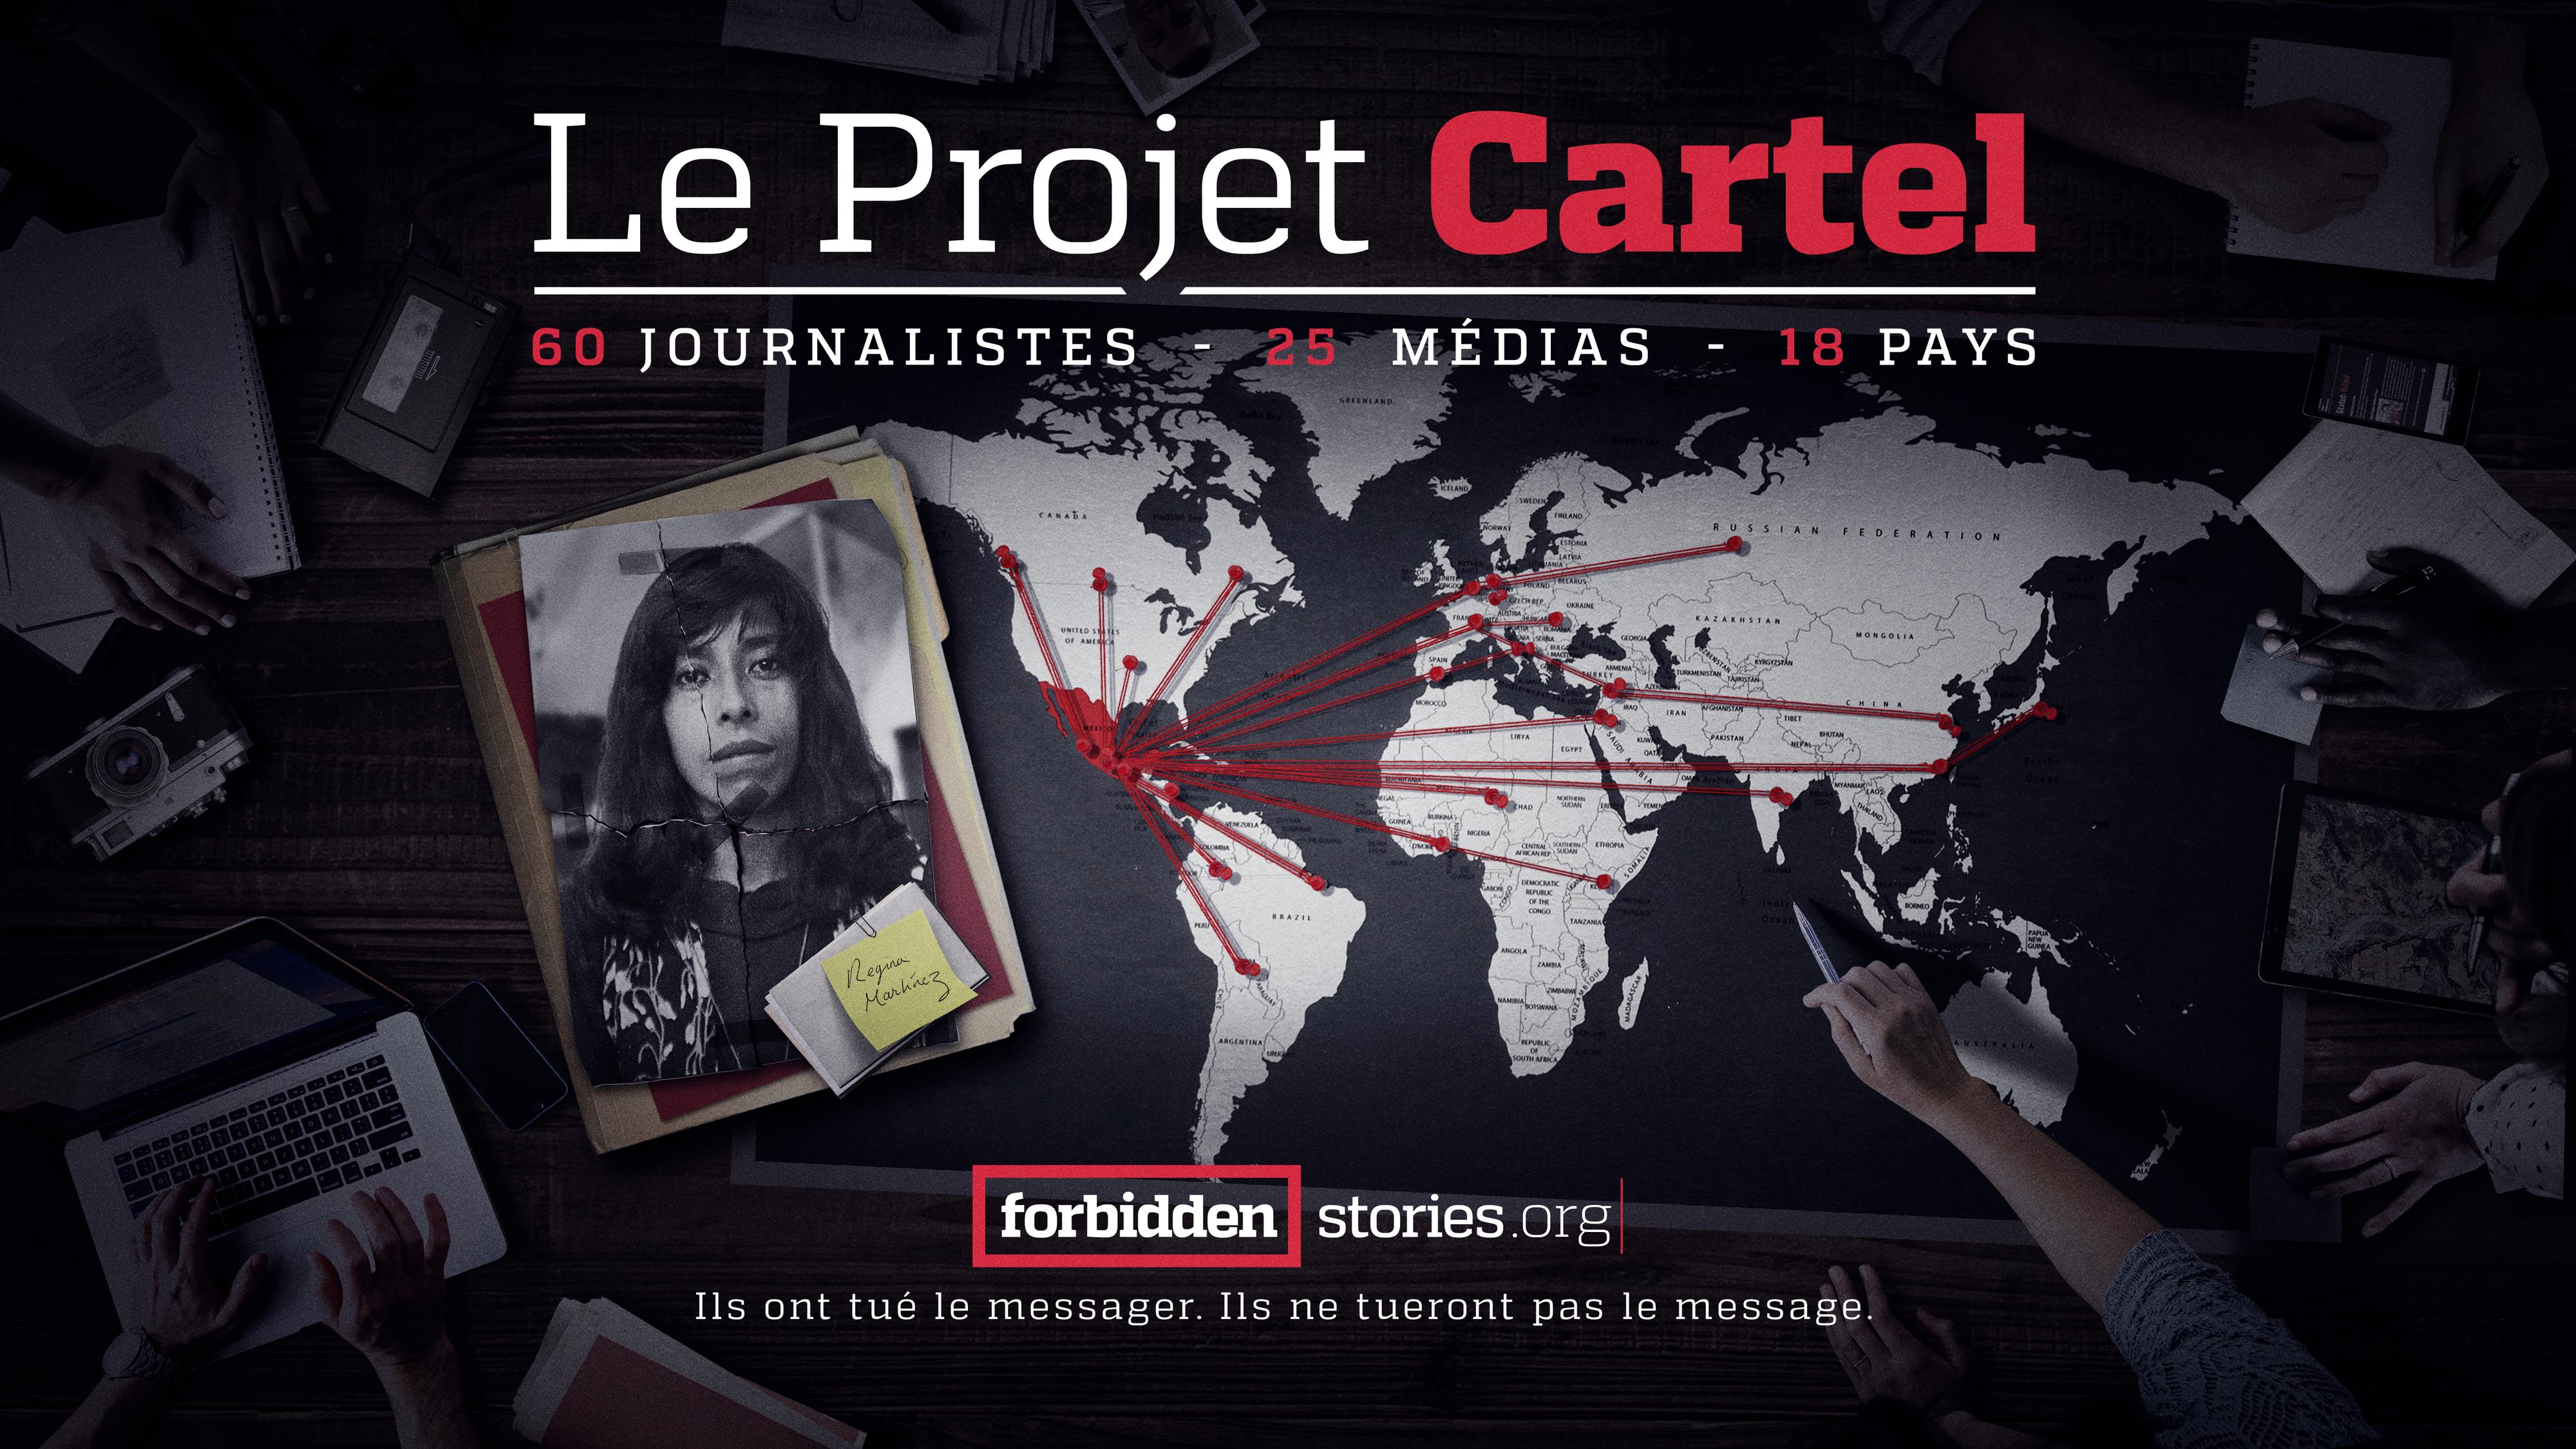 Le projet Cartel pour poursuivre les enquêtes des journalistes mexicains [forbiddenstories.org - Cavan Images]